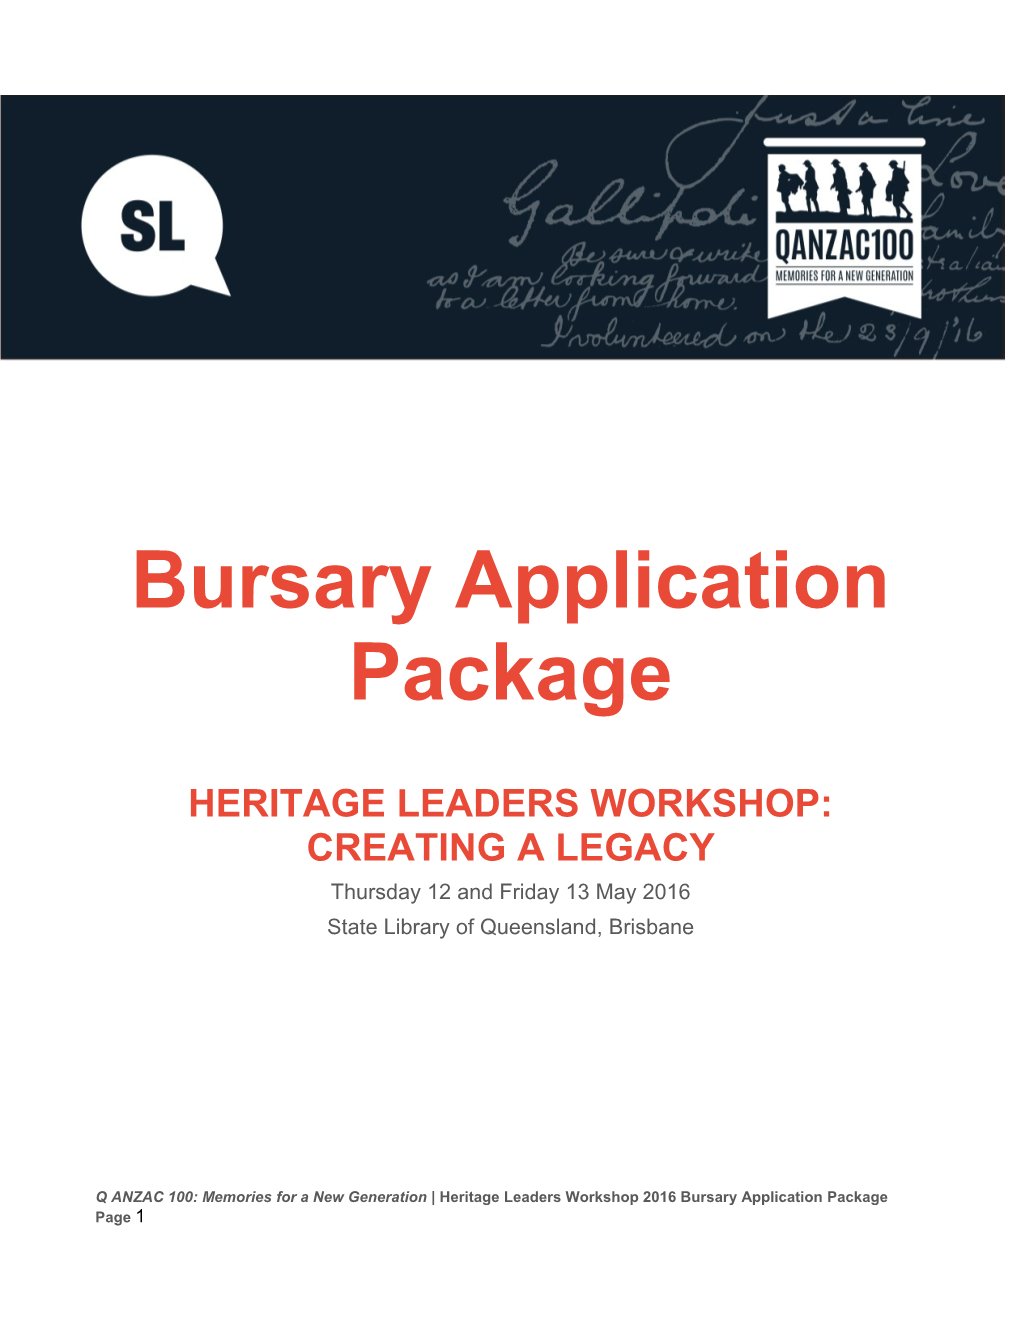 Heritage Leaders Workshop: Creatinga Legacy